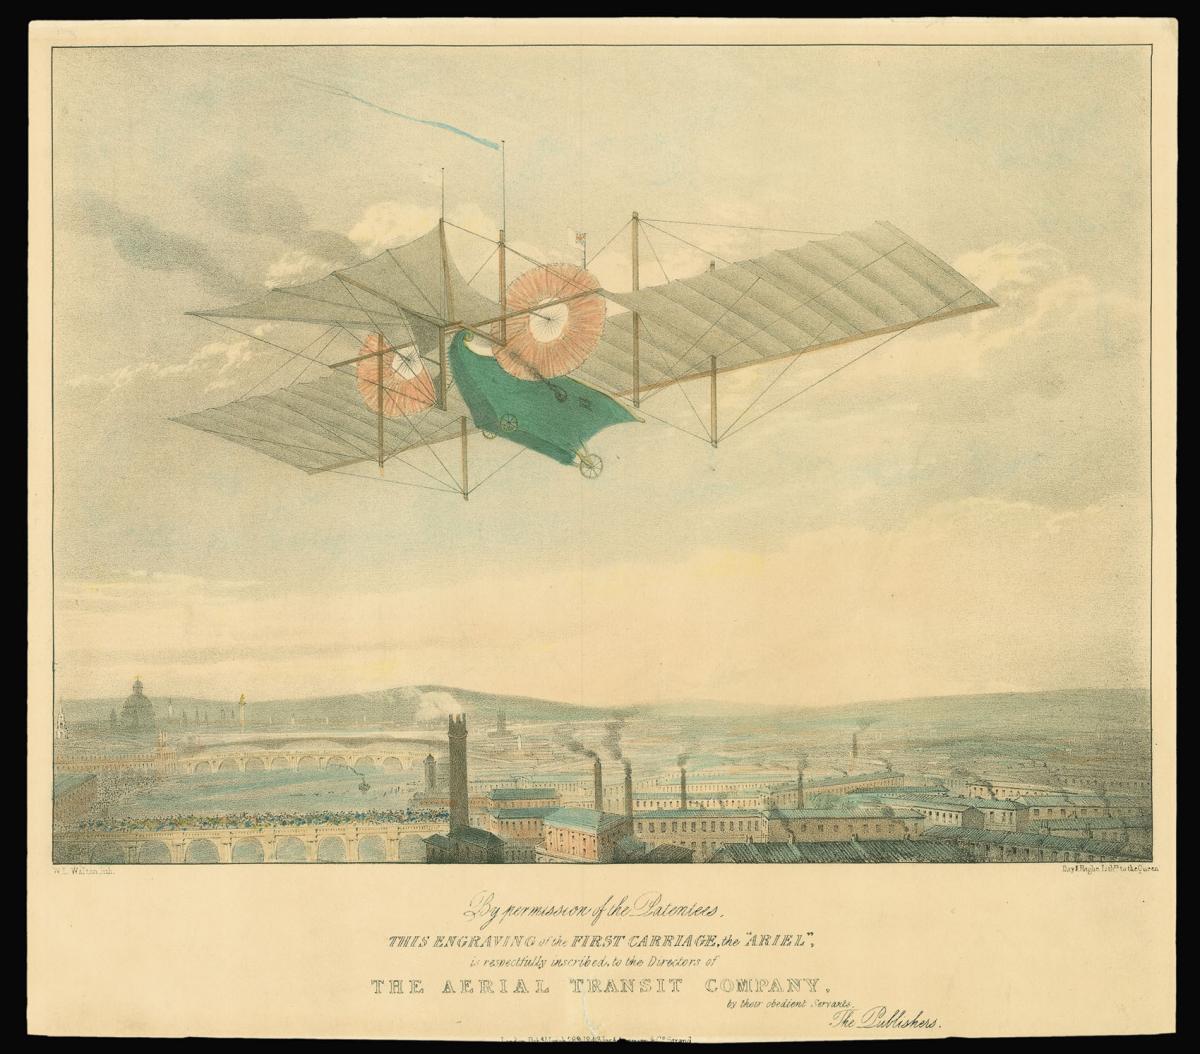 The first aeroplane?